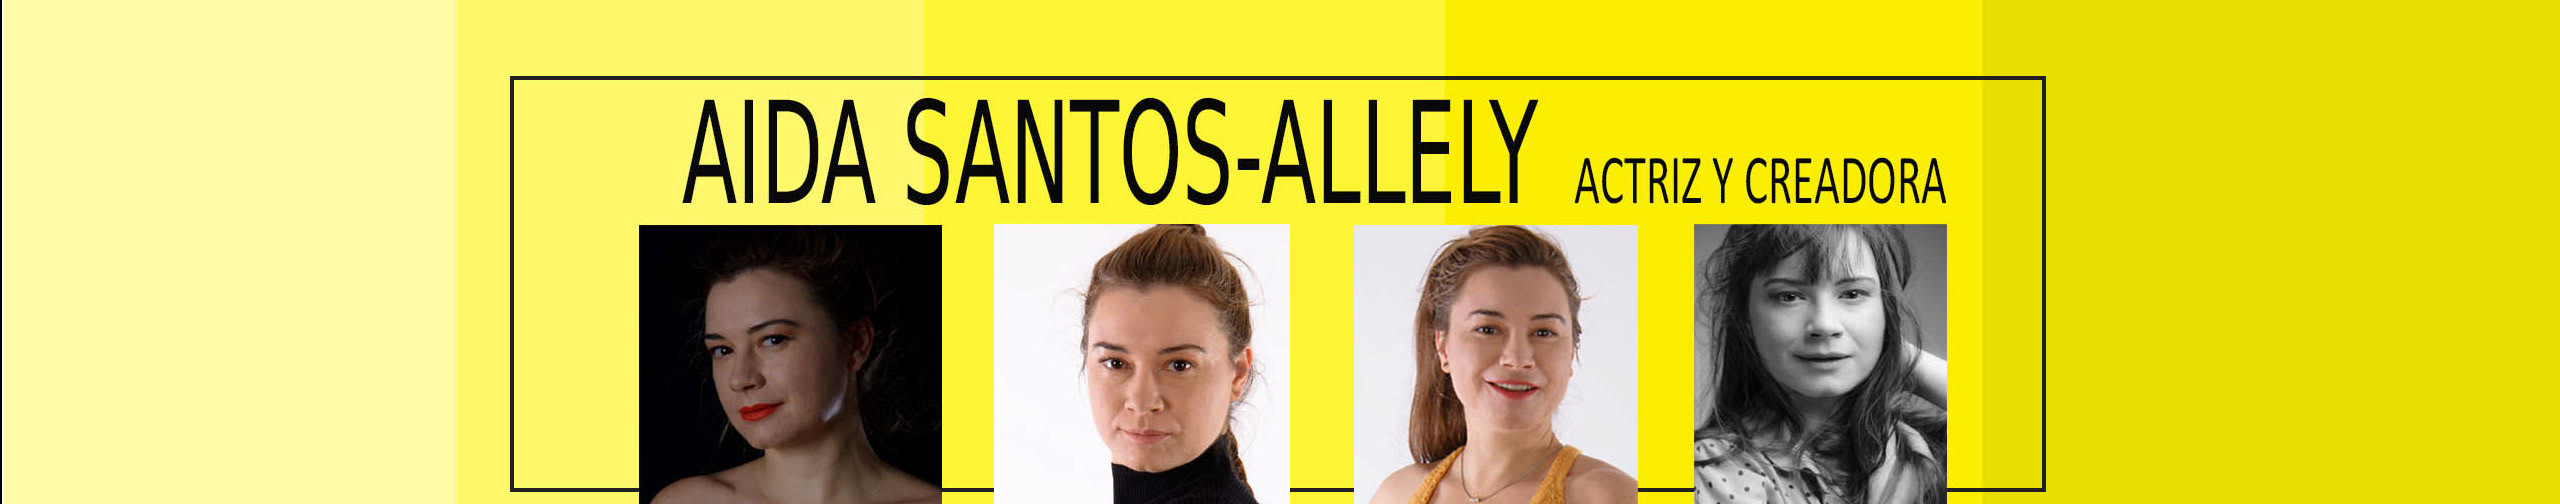 Banner de perfil de Aida Santos-Allely